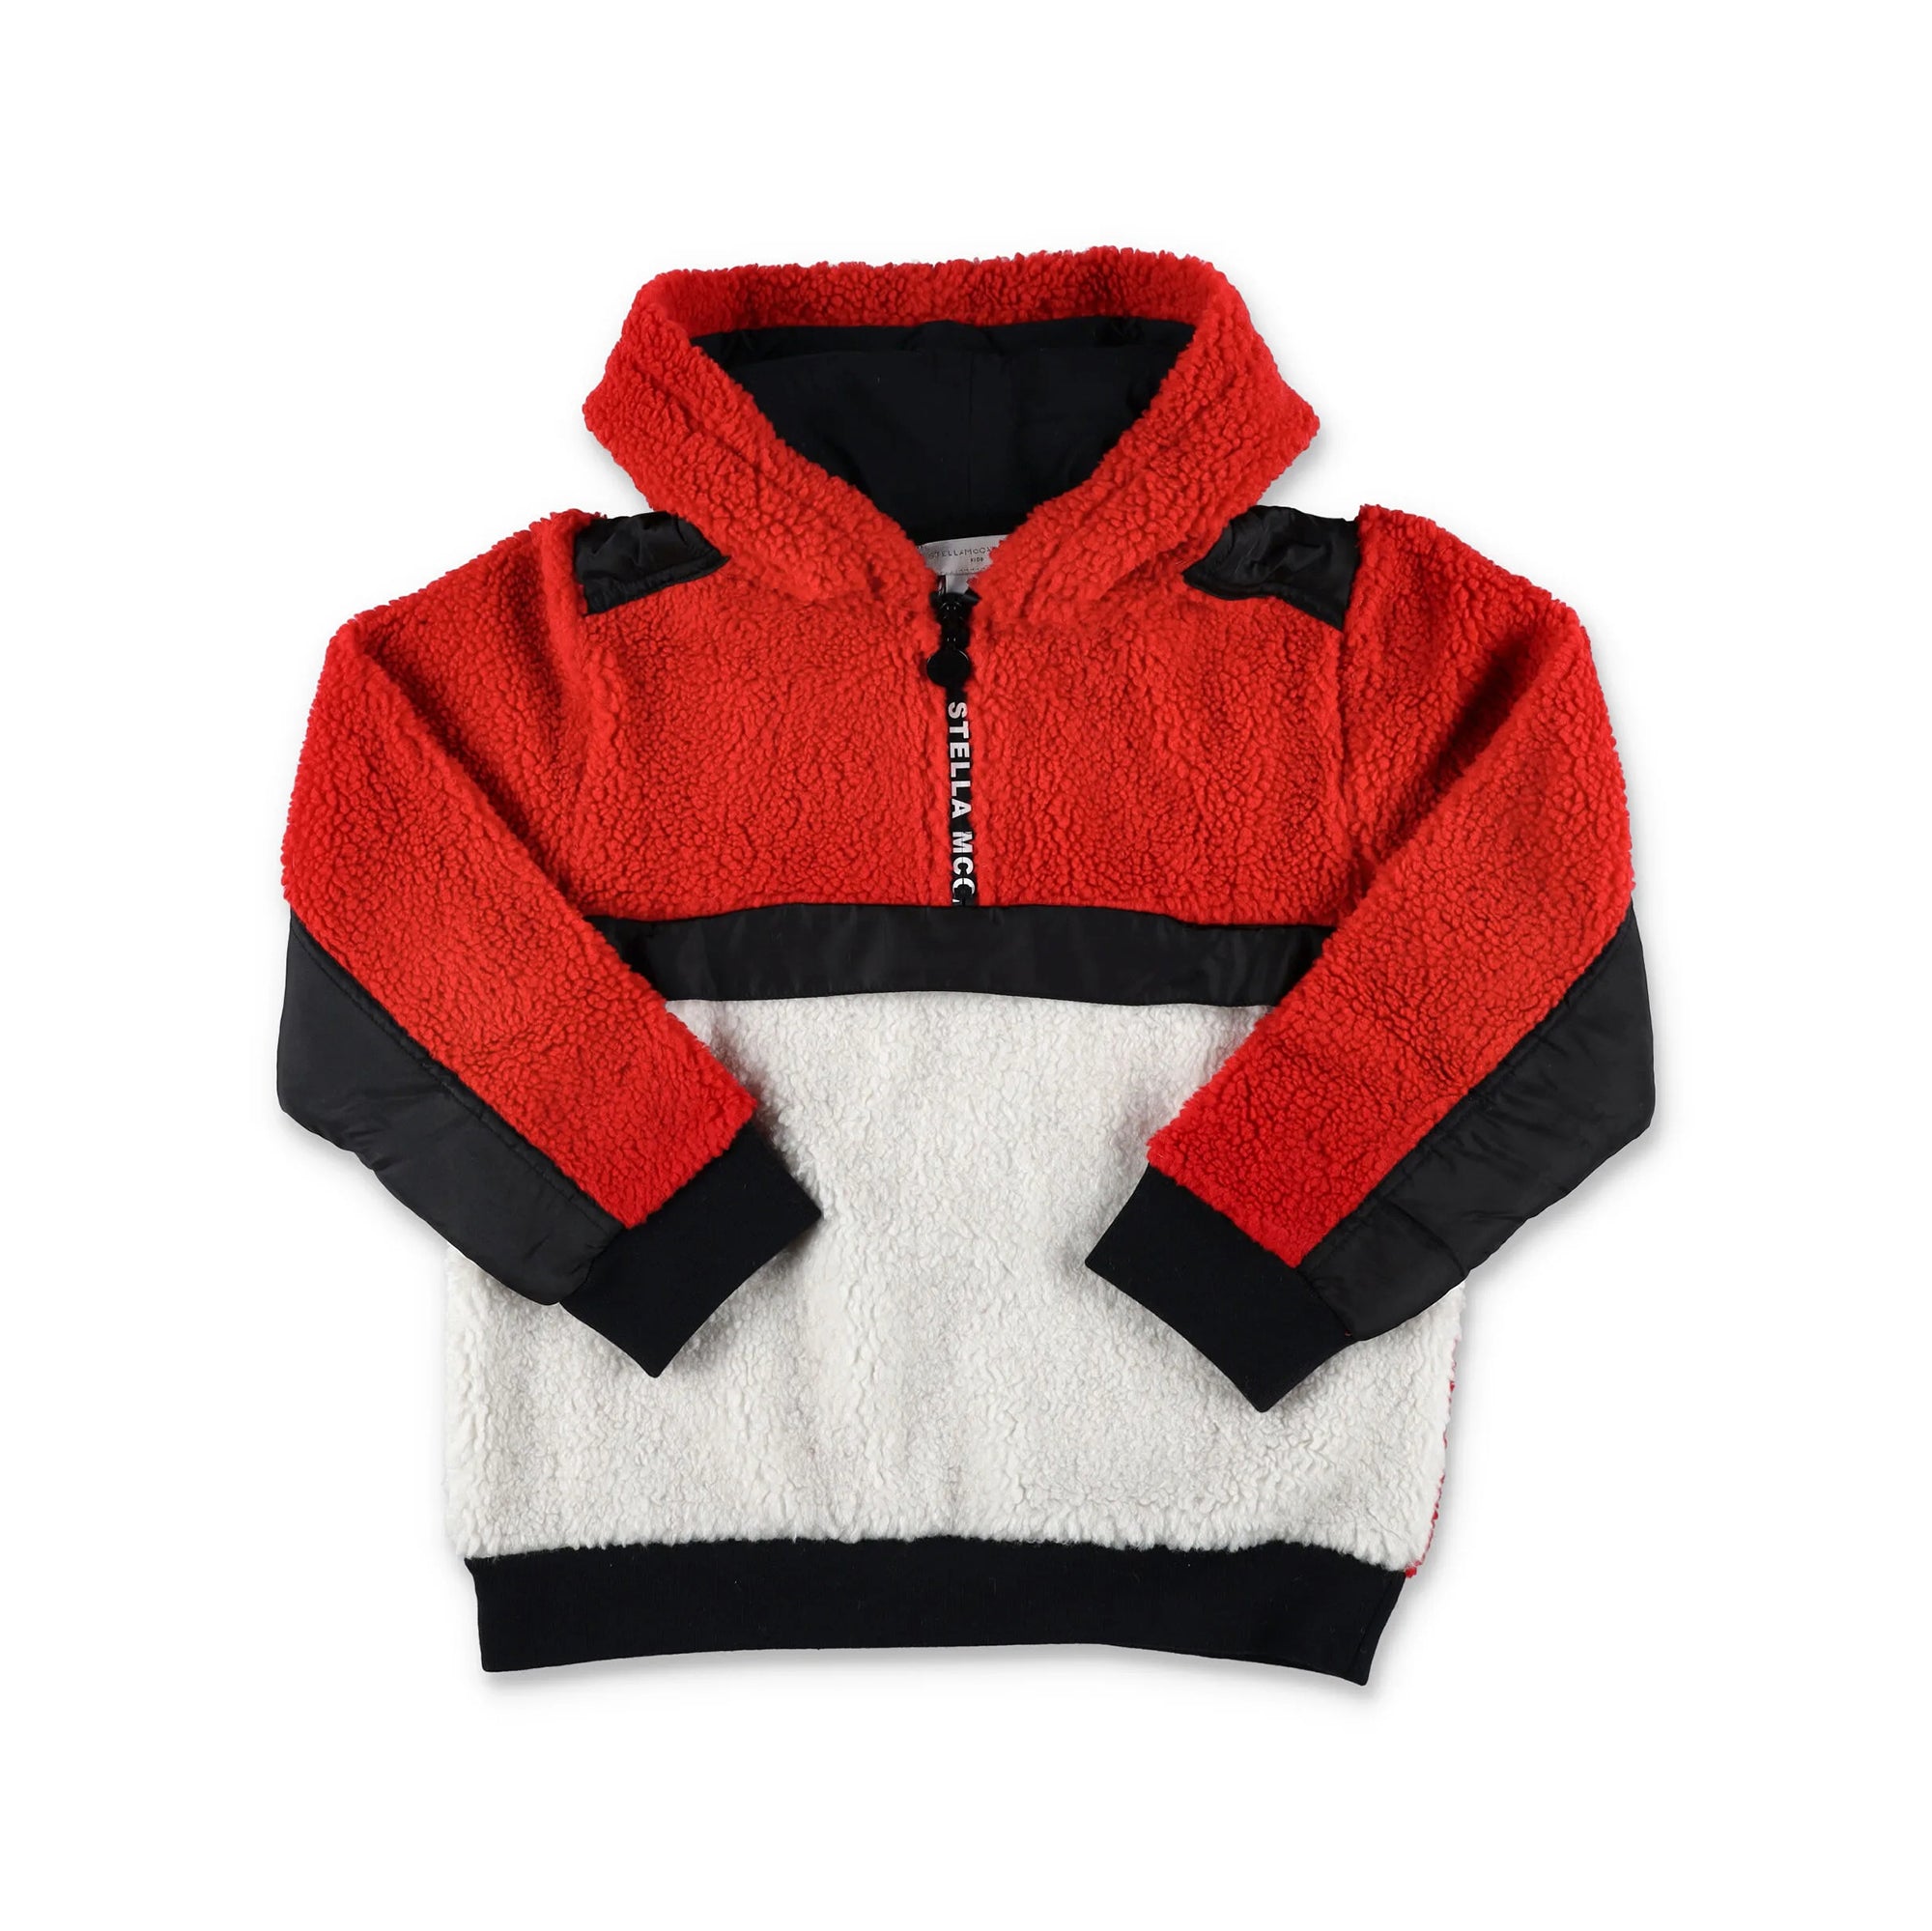 Boys Red Fleece Sweatshirt